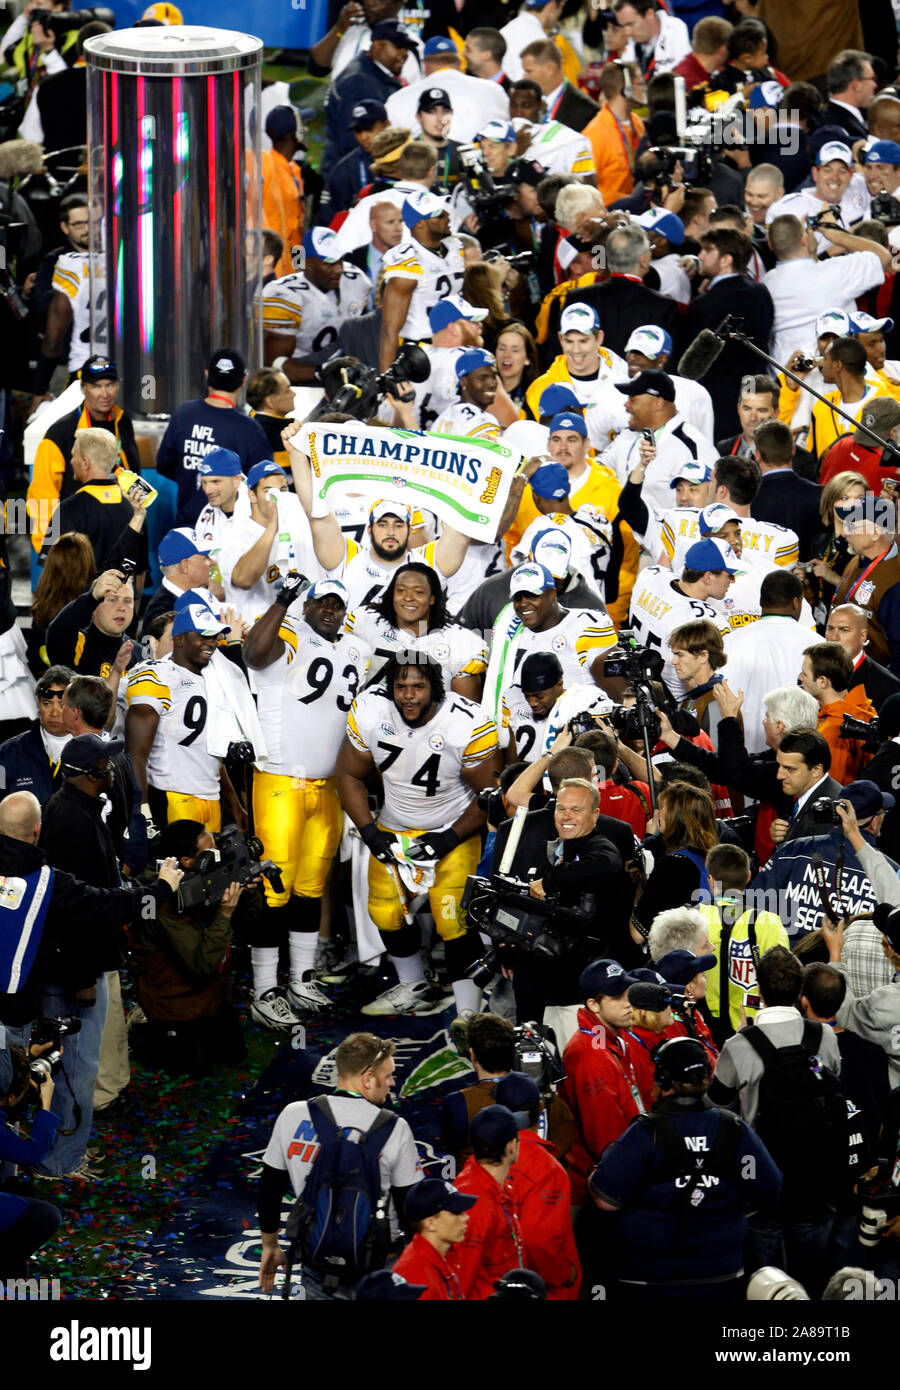 TAMPA, Florida; Februar 1, 2009; die Pittsburgh Steelers einschließlich Willie Colon #74 und Nick Eason #93 Feiern nach dem Sieg über die Arizona Cardinals in Super Bowl XLIII bei Raymond James Stadium in Tampa, Florida. Die Steelers gewannen das Spiel 27-23. Stockfoto